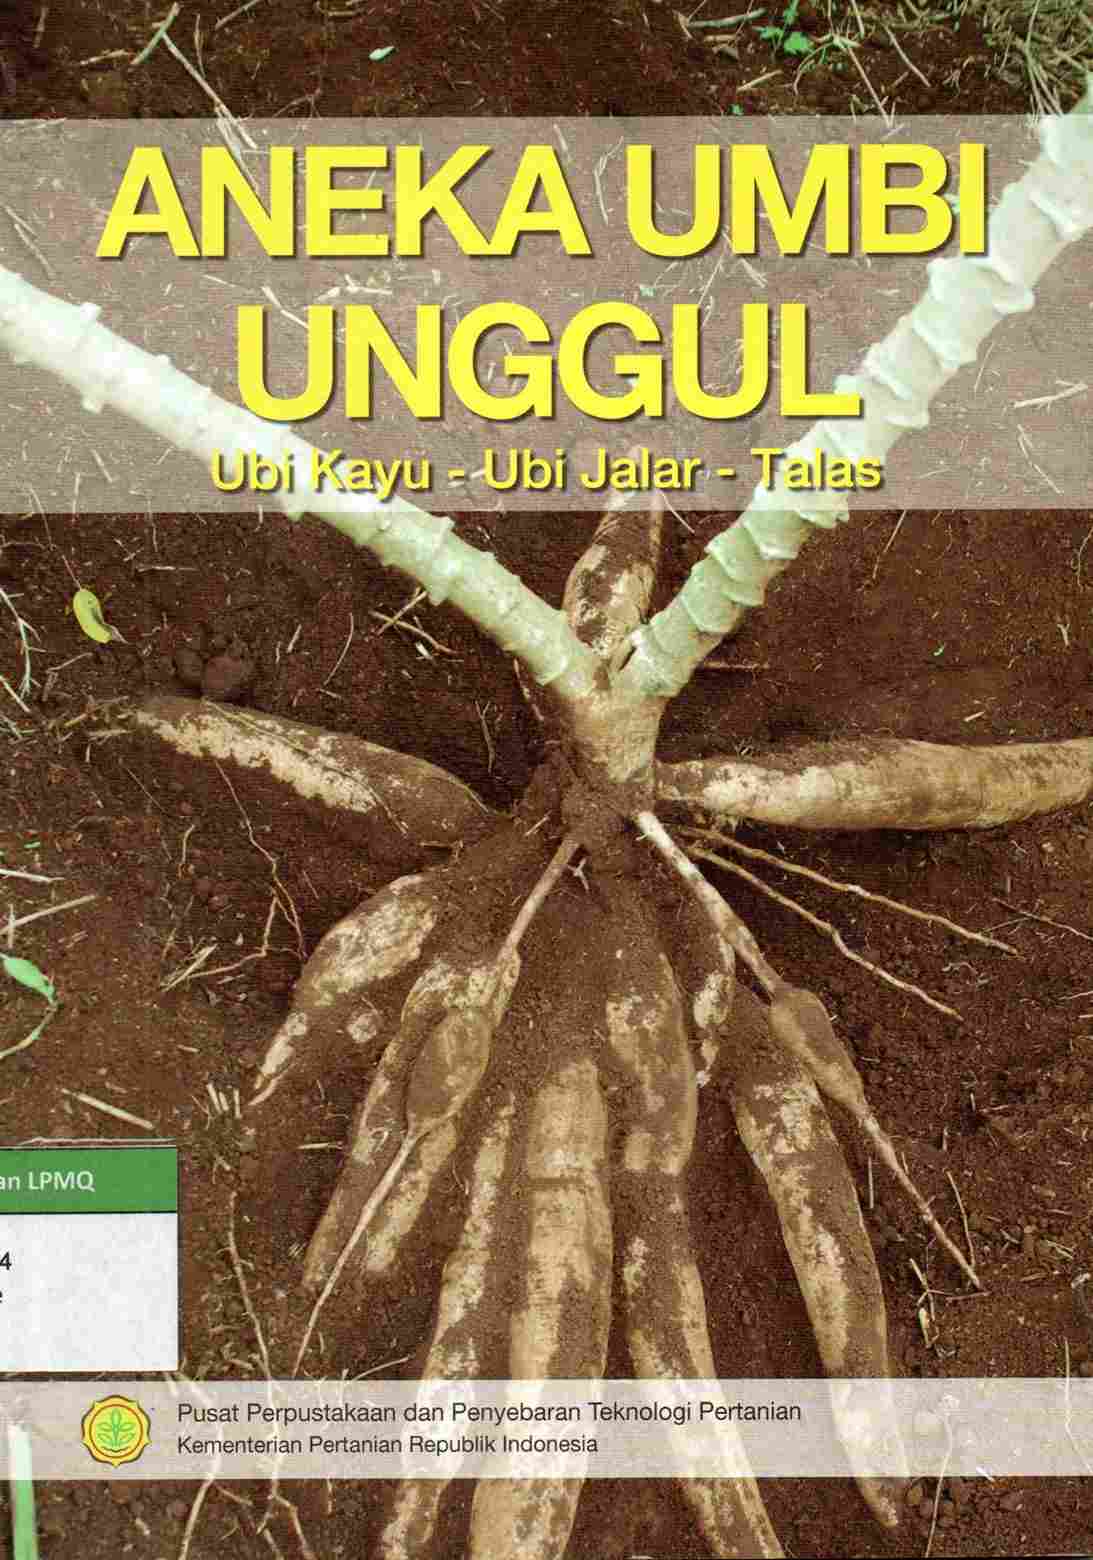 Aneka Umbi Unggul: Ubi Kayu - Ubi Jalar - Talas